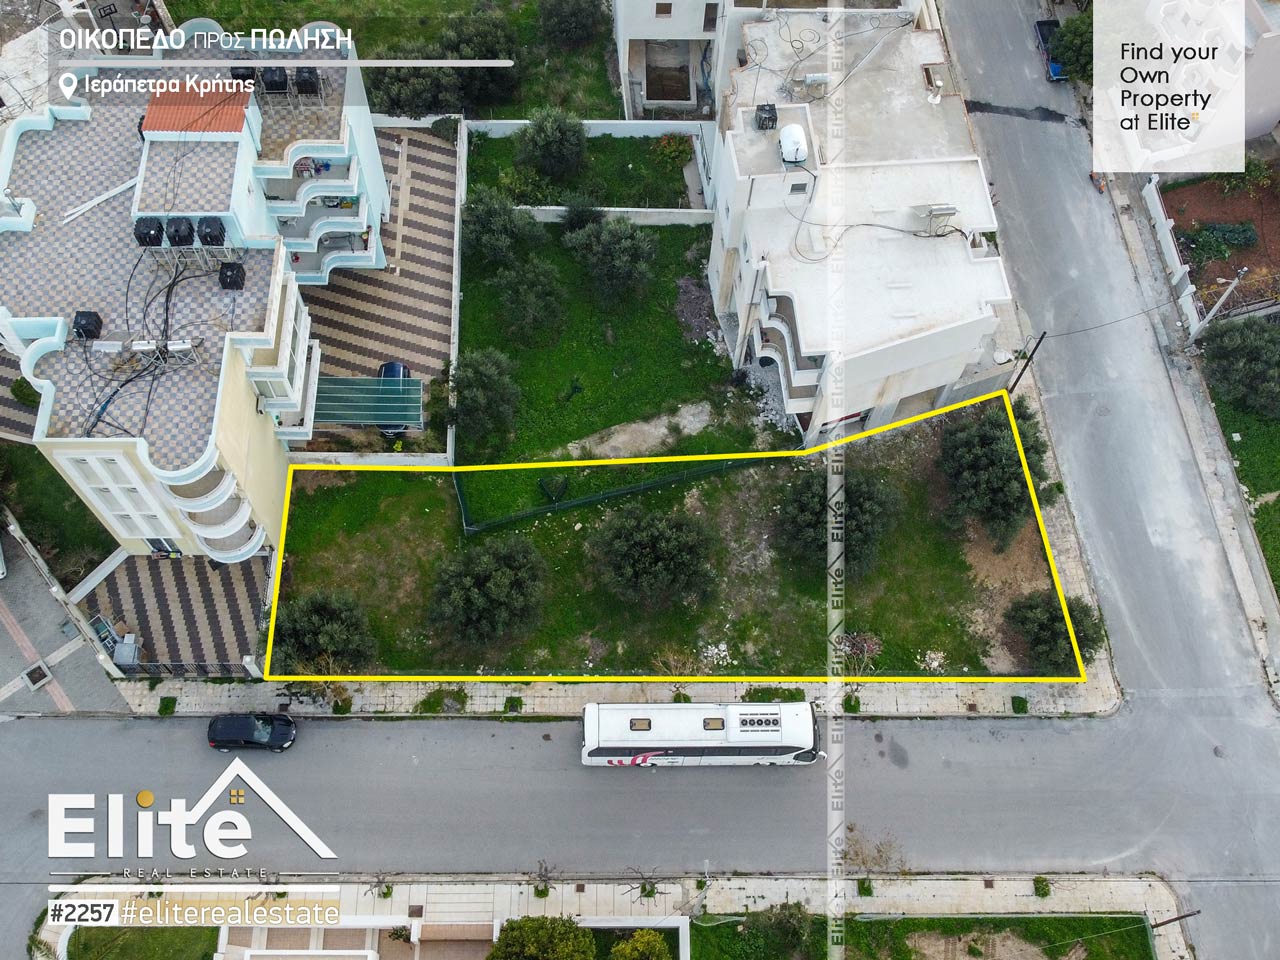 Grundstück zu verkaufen in Ierapetra, Kreta #2257 | ELITE REAL ESTATE